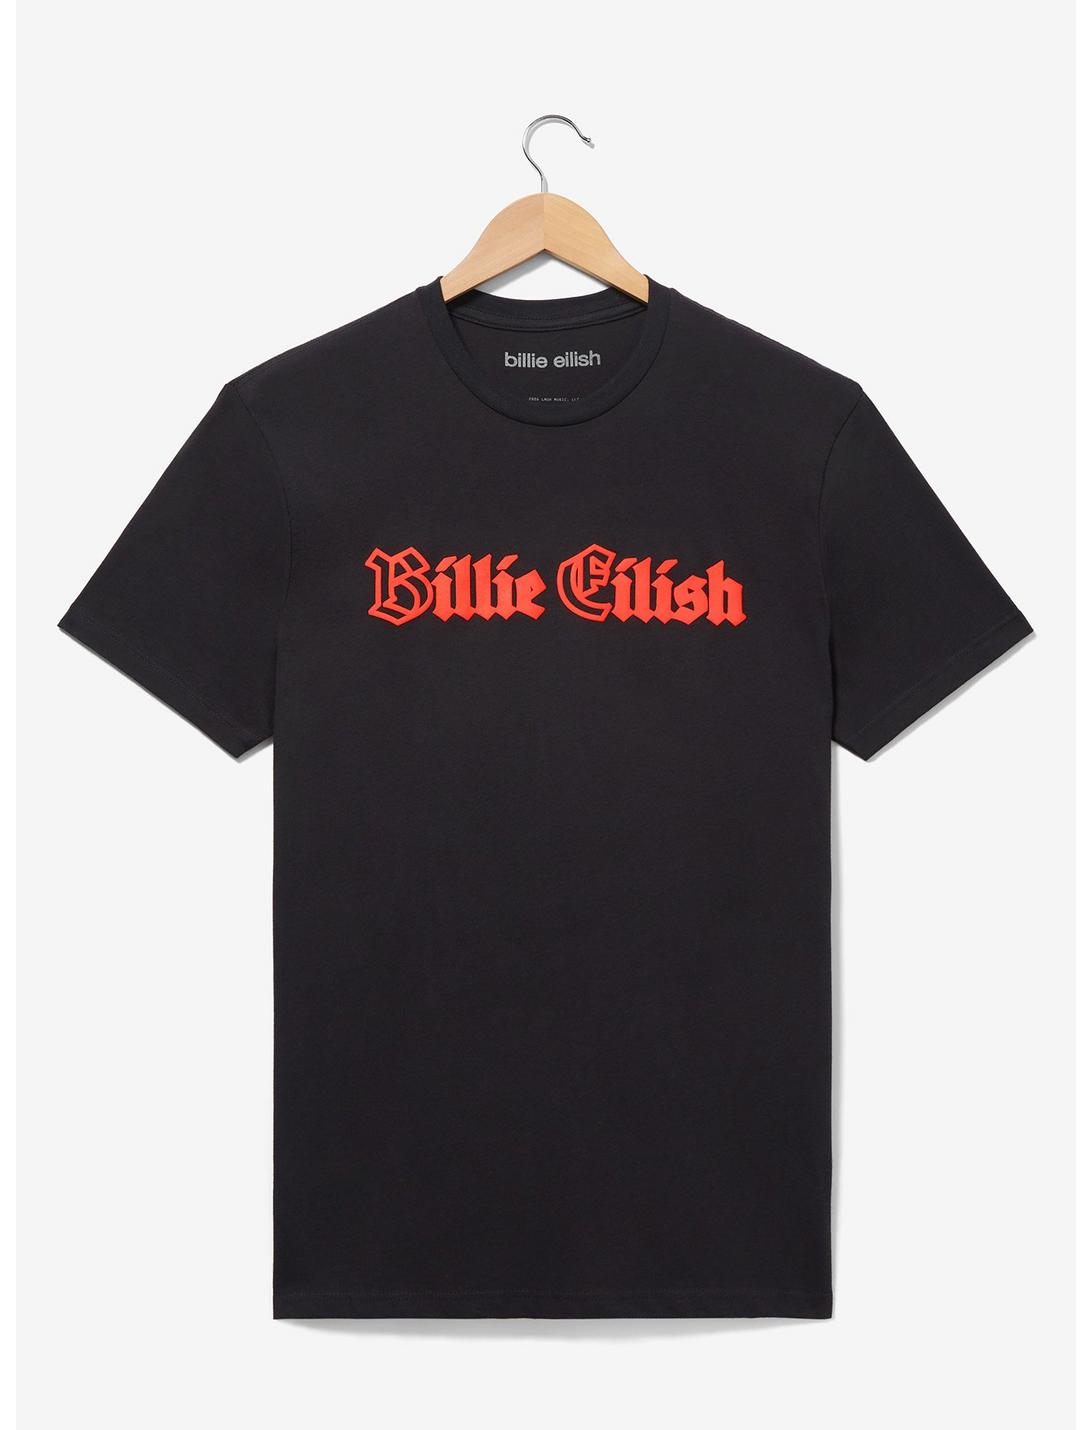 Billie Eilish Tonal Portrait T-Shirt, GRAPHITE, hi-res